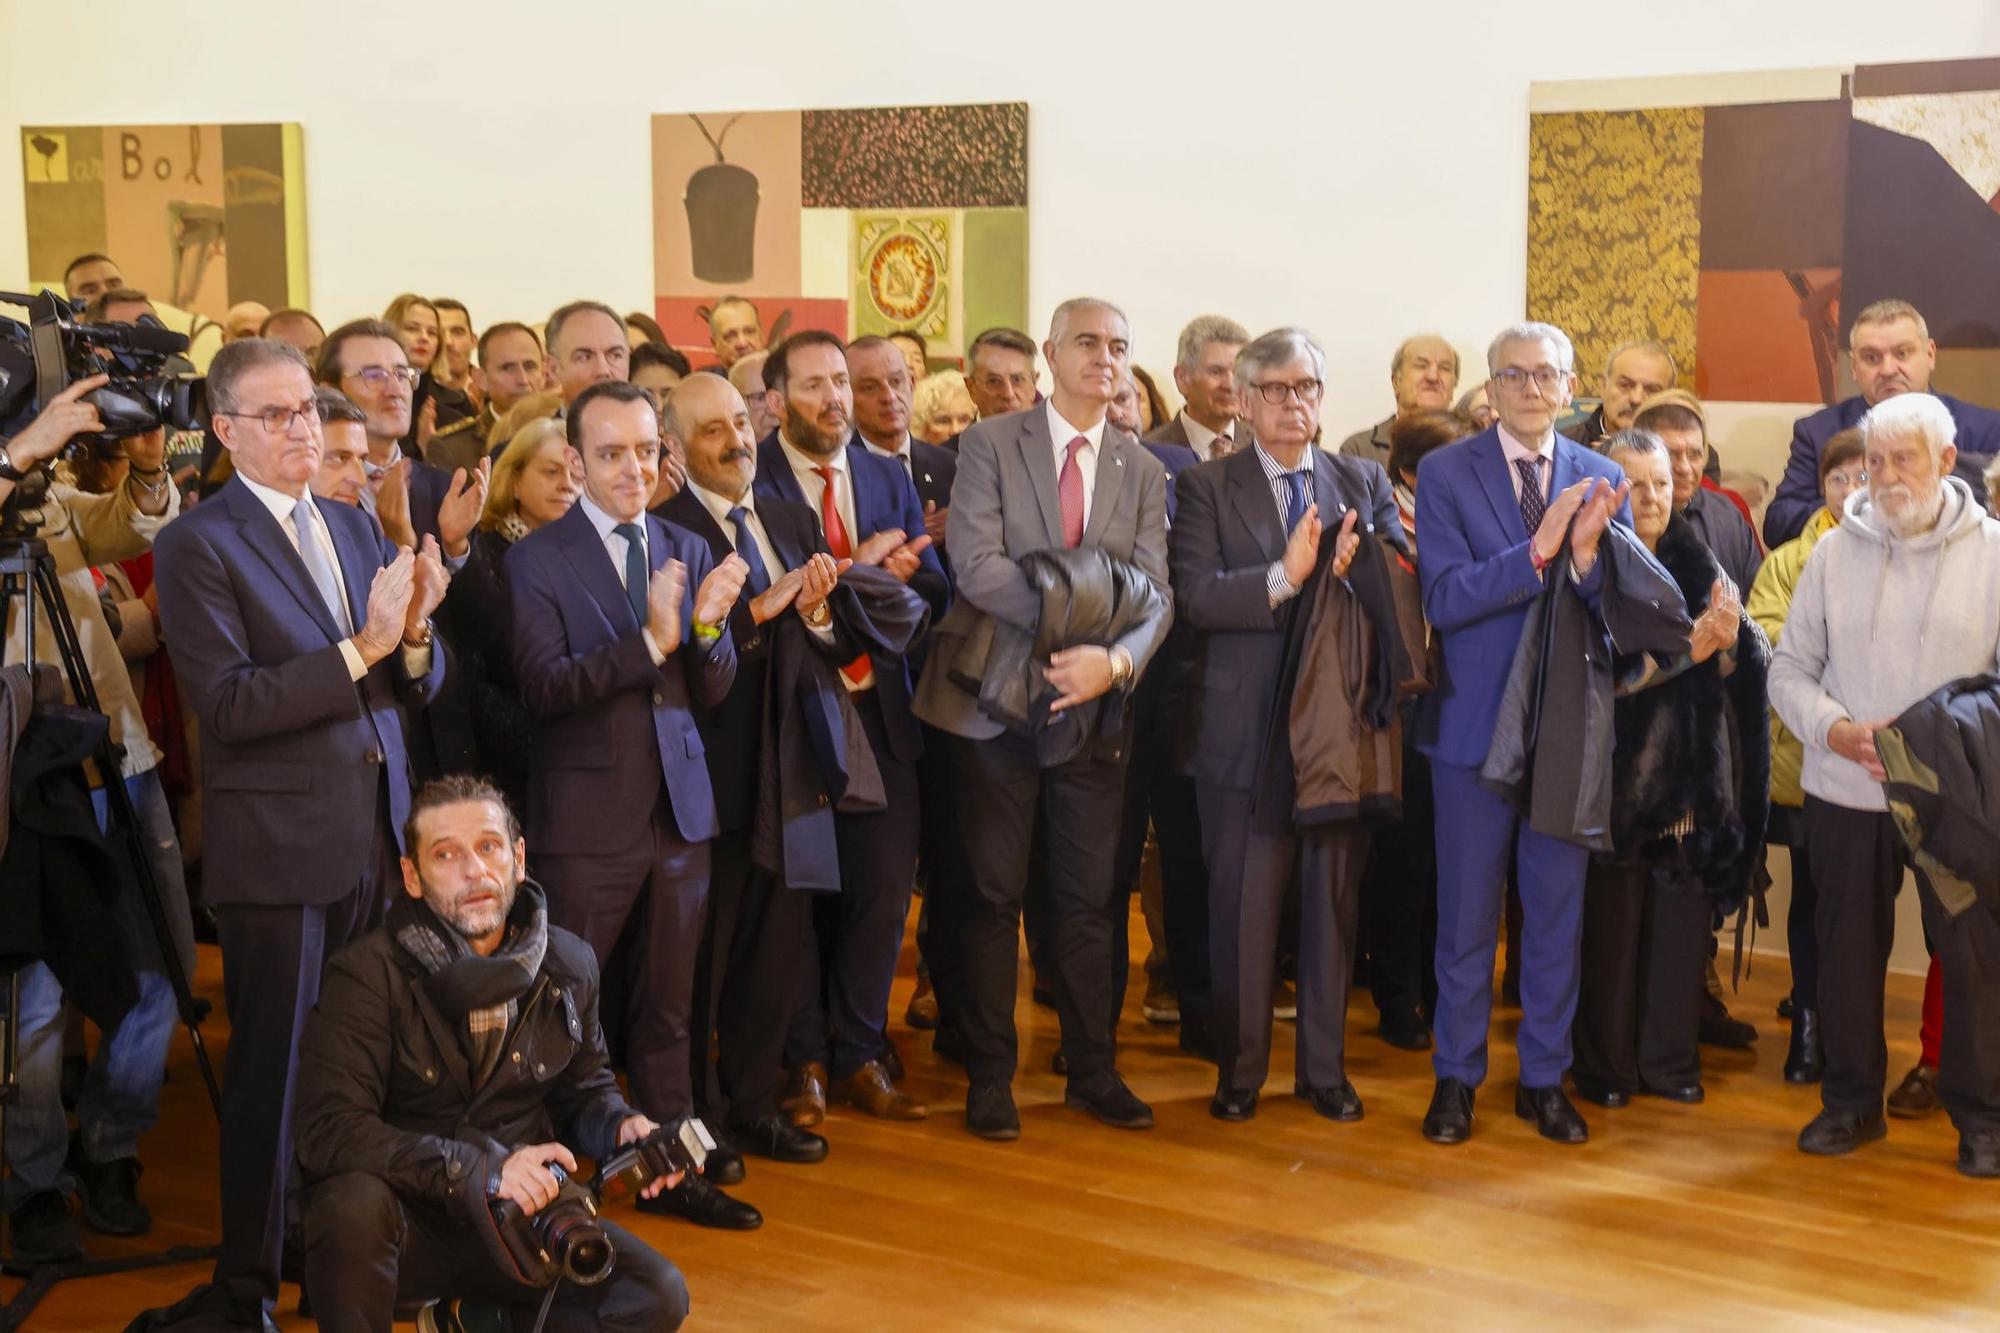 El Marco celebra el 45º aniversario de la Constitución en Vigo